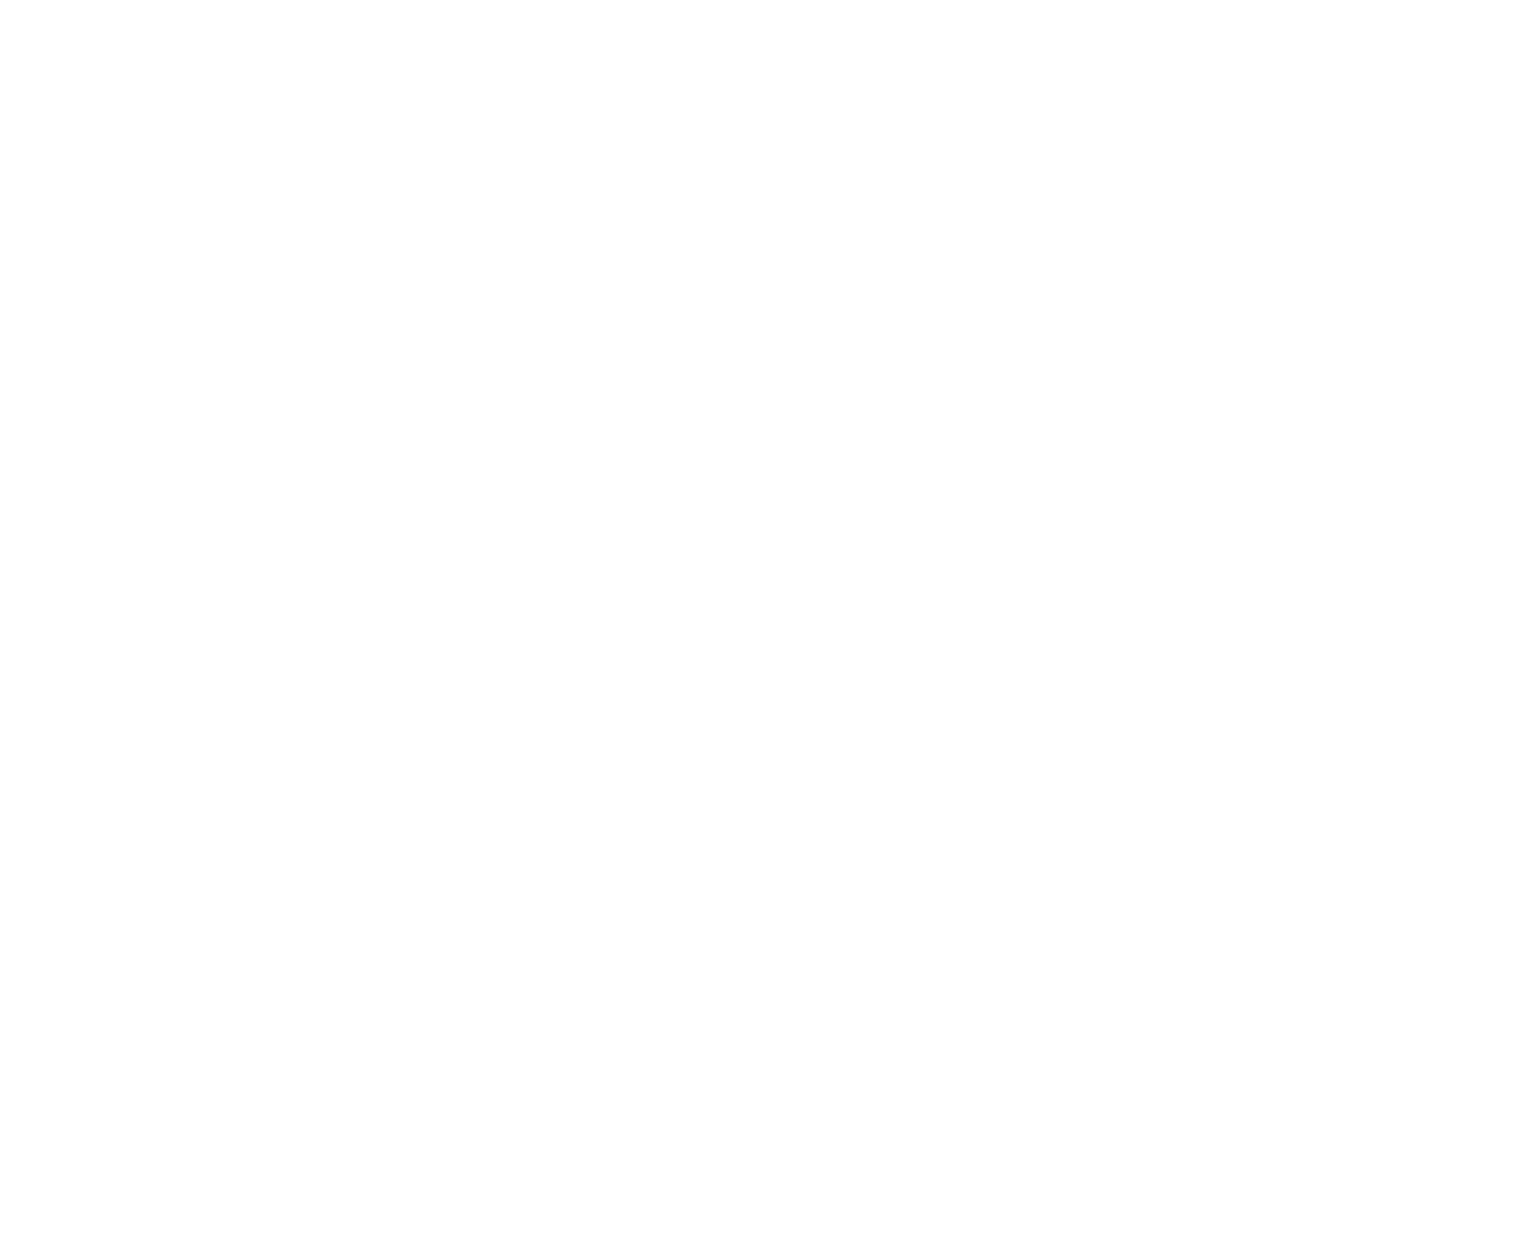 Genus logo pour fonds sombres (PNG transparent)